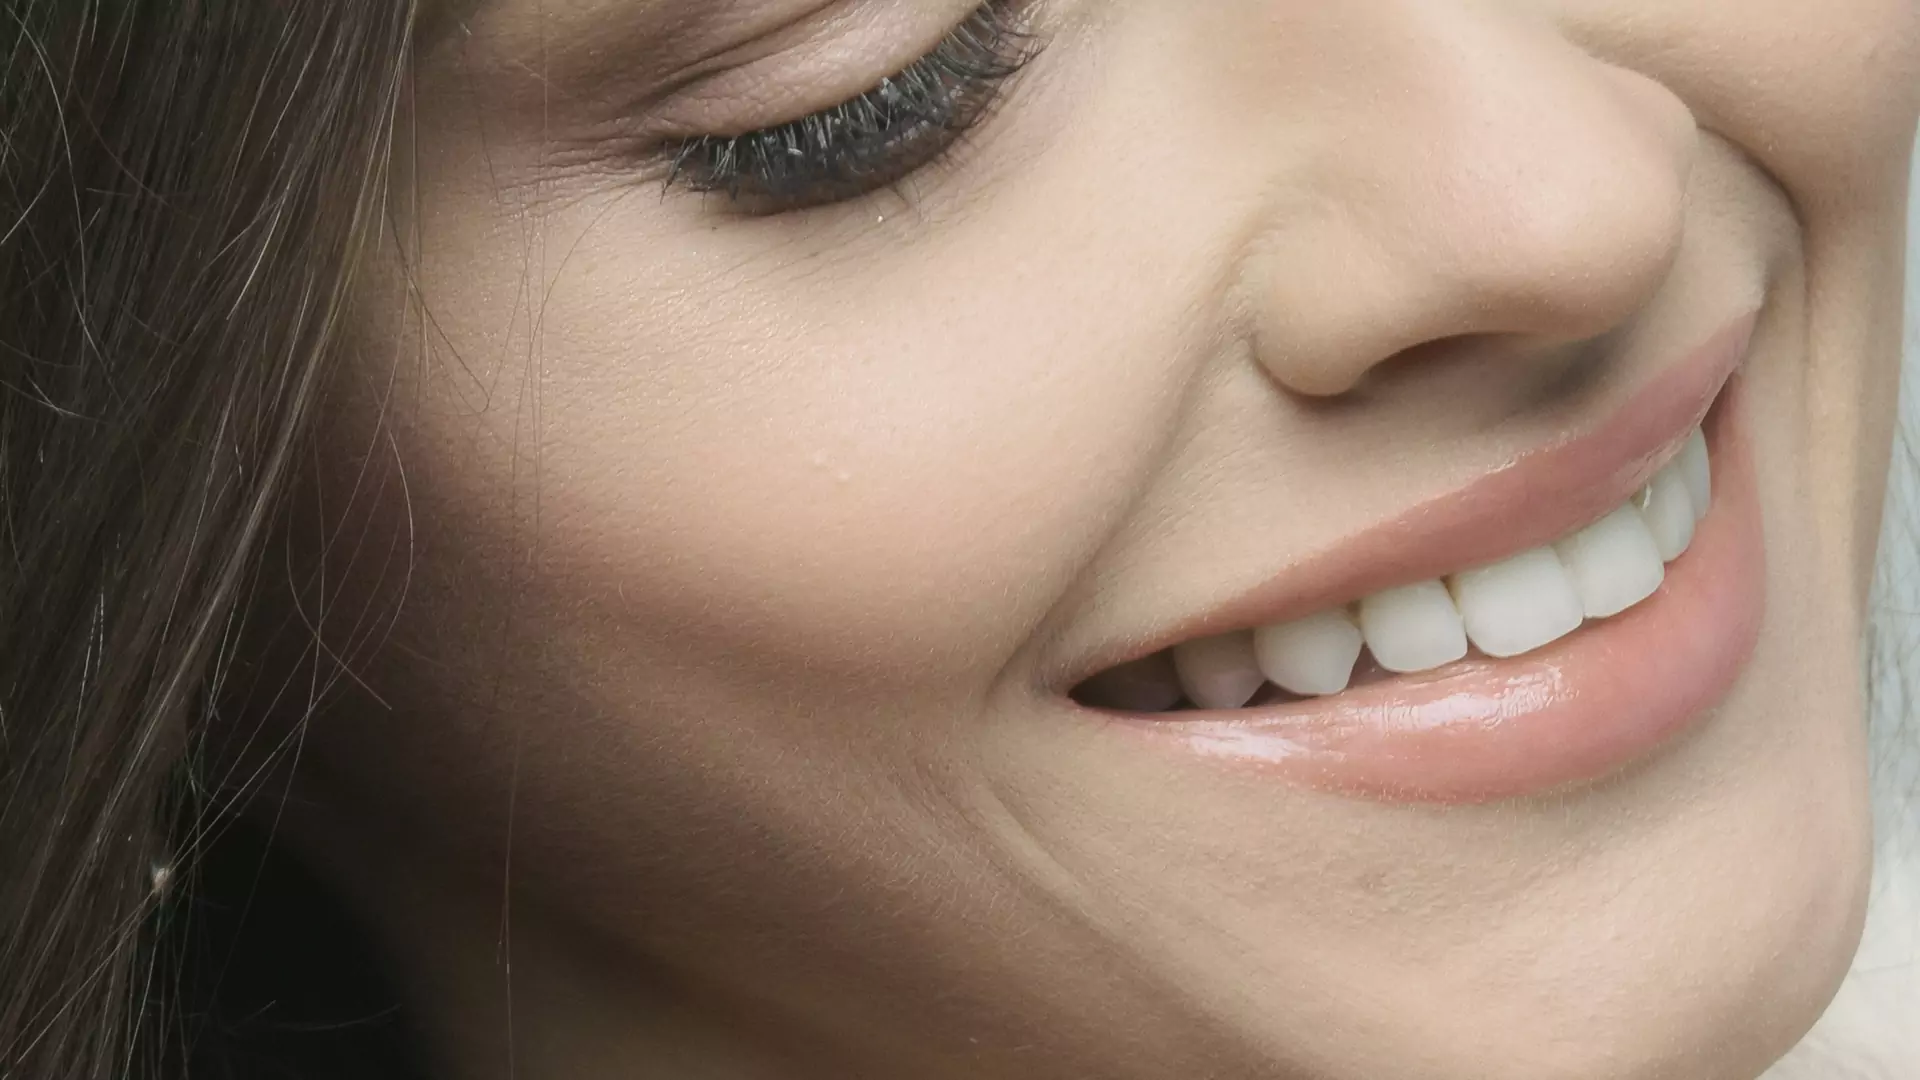 Pasta micelarna daje efekt dentystycznej czystości i bieli jak prosto z gabinetu